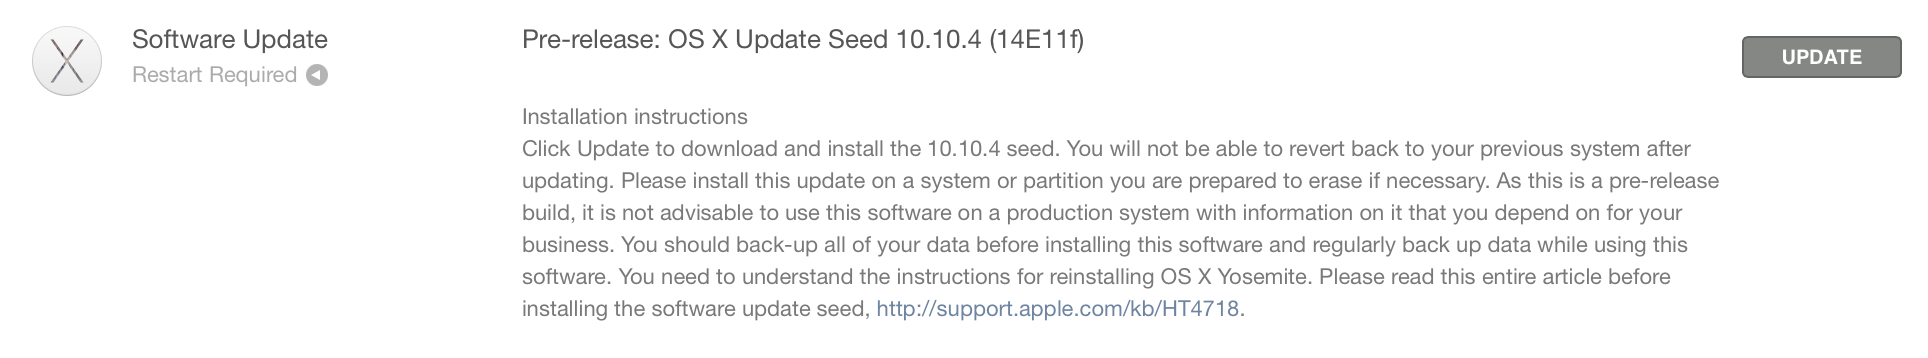 Versione beta di OS X 10.10.4